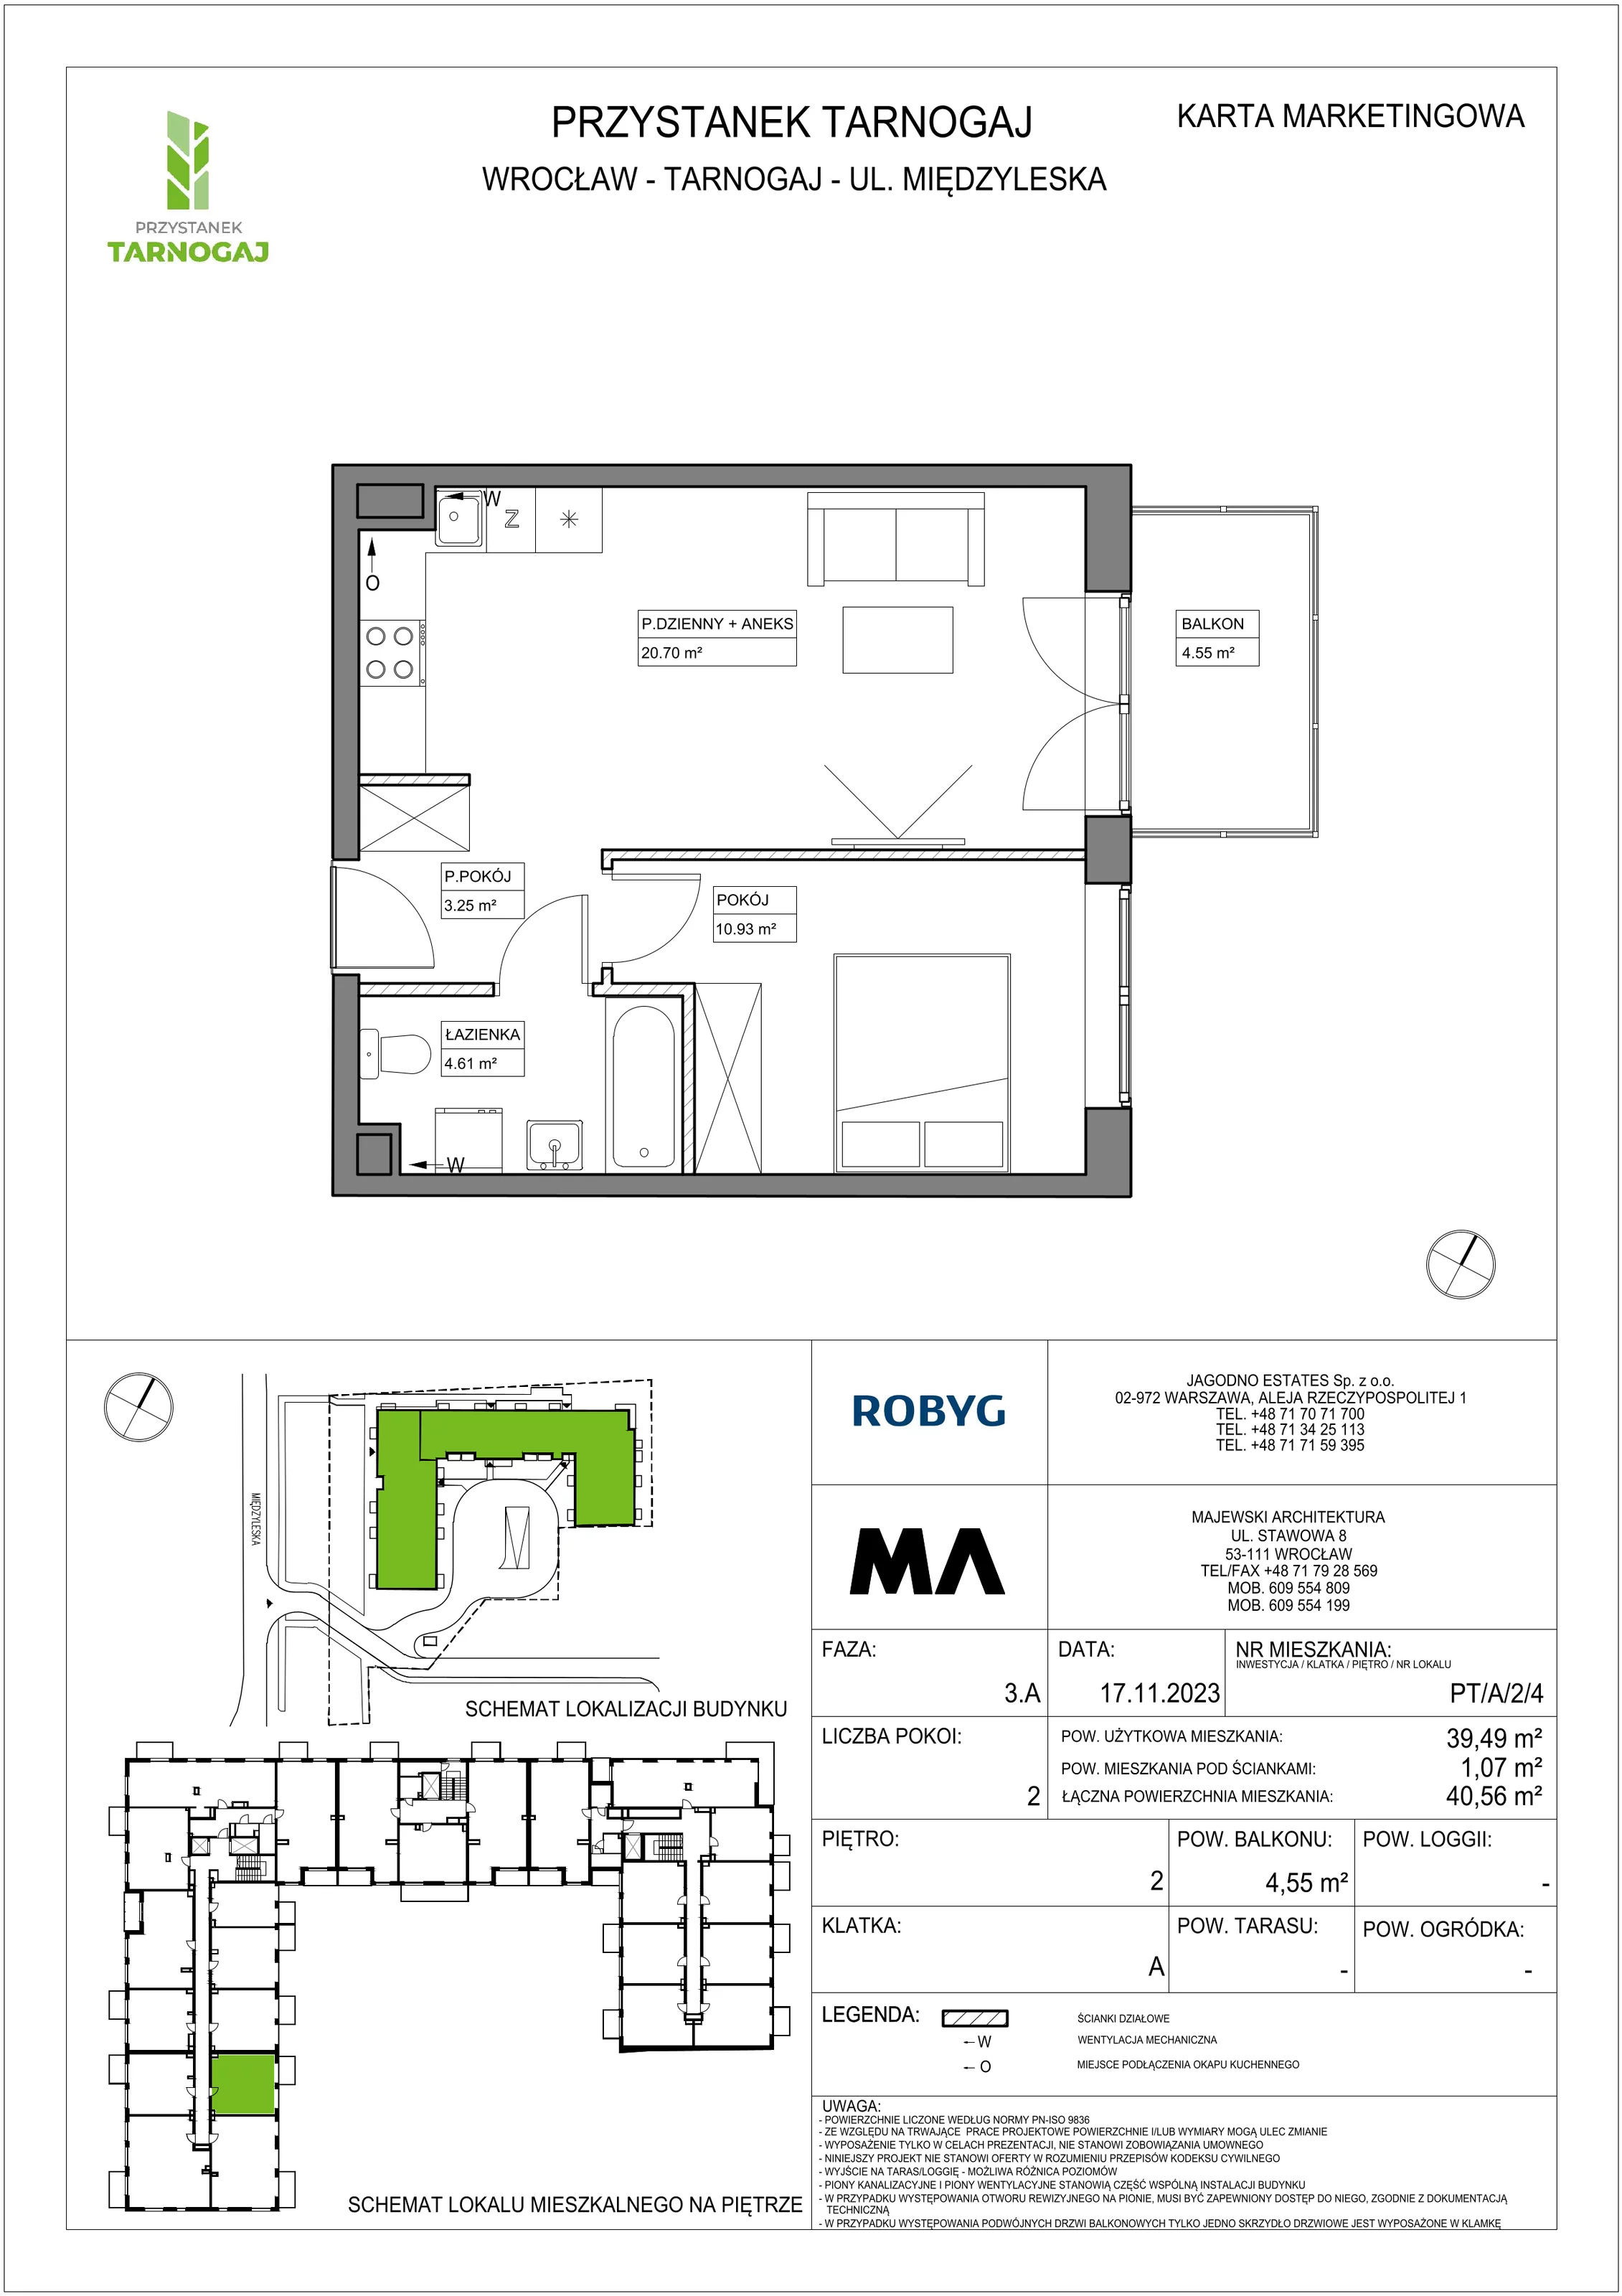 Mieszkanie 39,49 m², piętro 2, oferta nr PT/A/2/4, Przystanek Tarnogaj, Wrocław, Tarnogaj, Krzyki, ul. Międzyleska / Gazowa